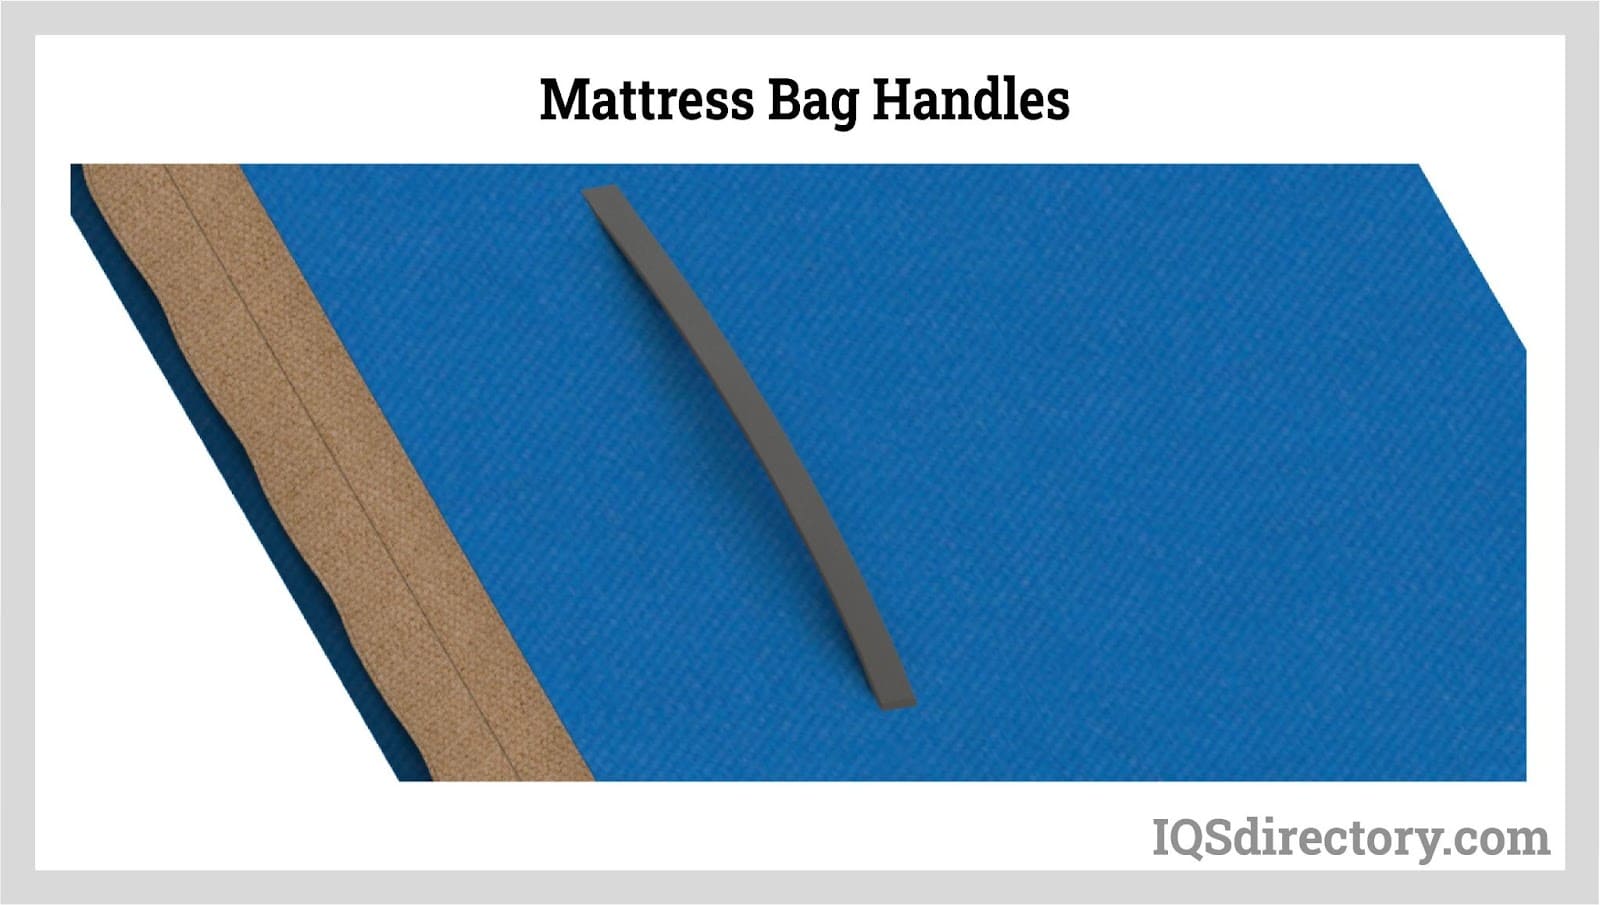 Mattress Bag Handles